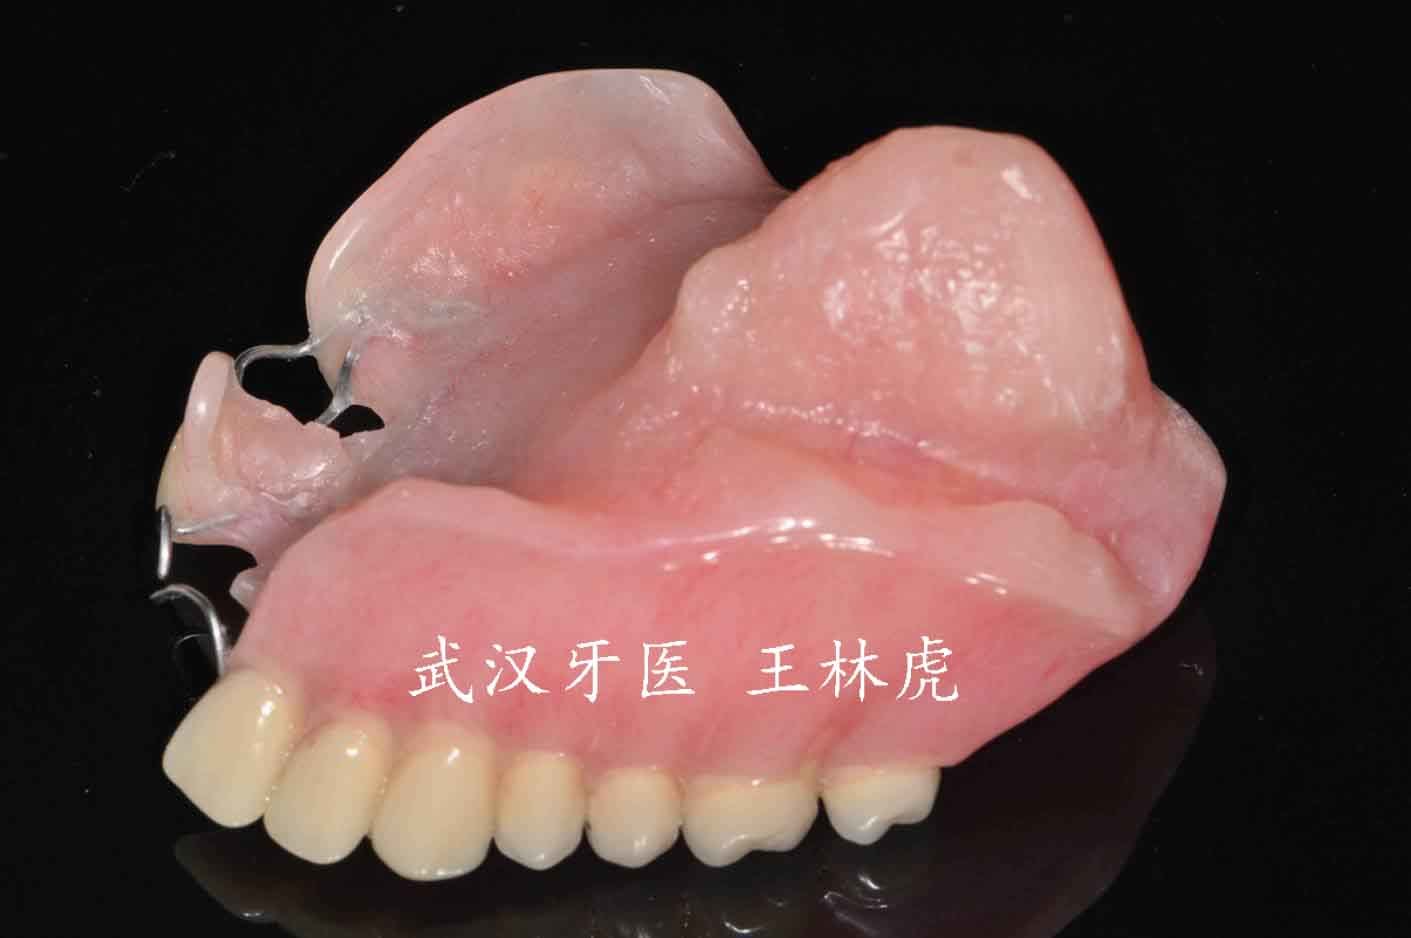 因而许多口腔颌面部缺损仍需采用人工材料的赝复体进行修复